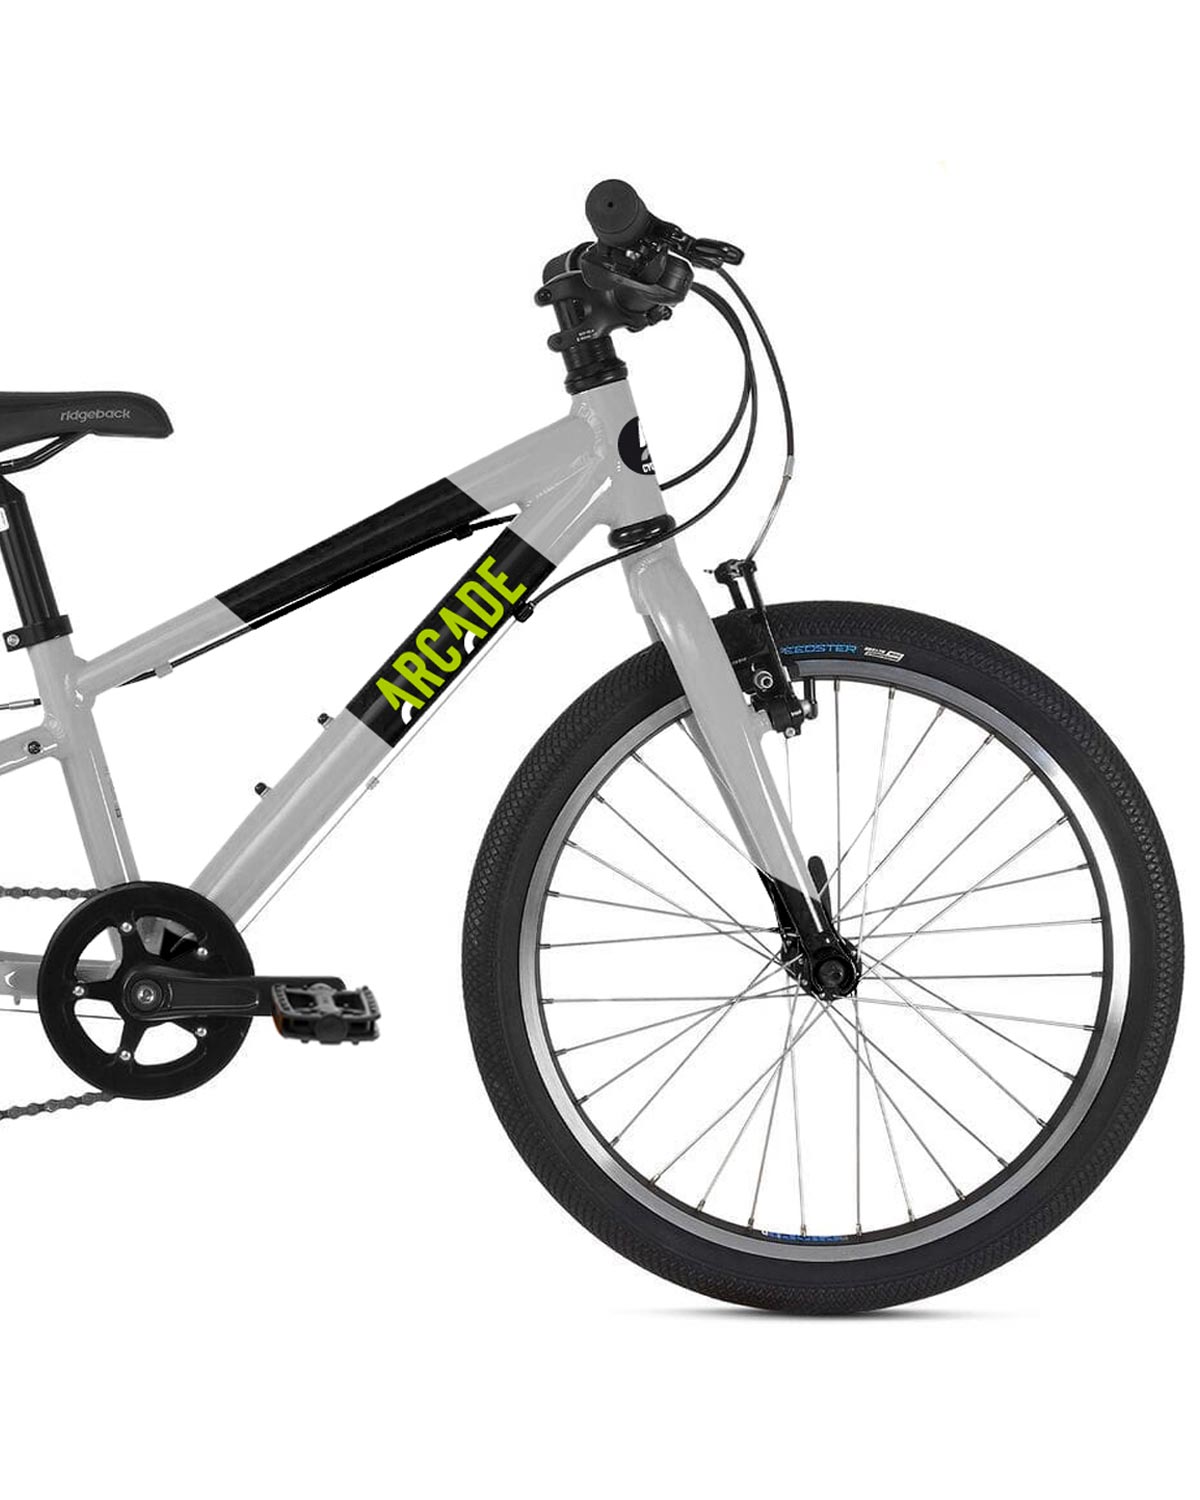 Vélo Enfant Cooltech 16 fabriqué en France by Arcade cycles